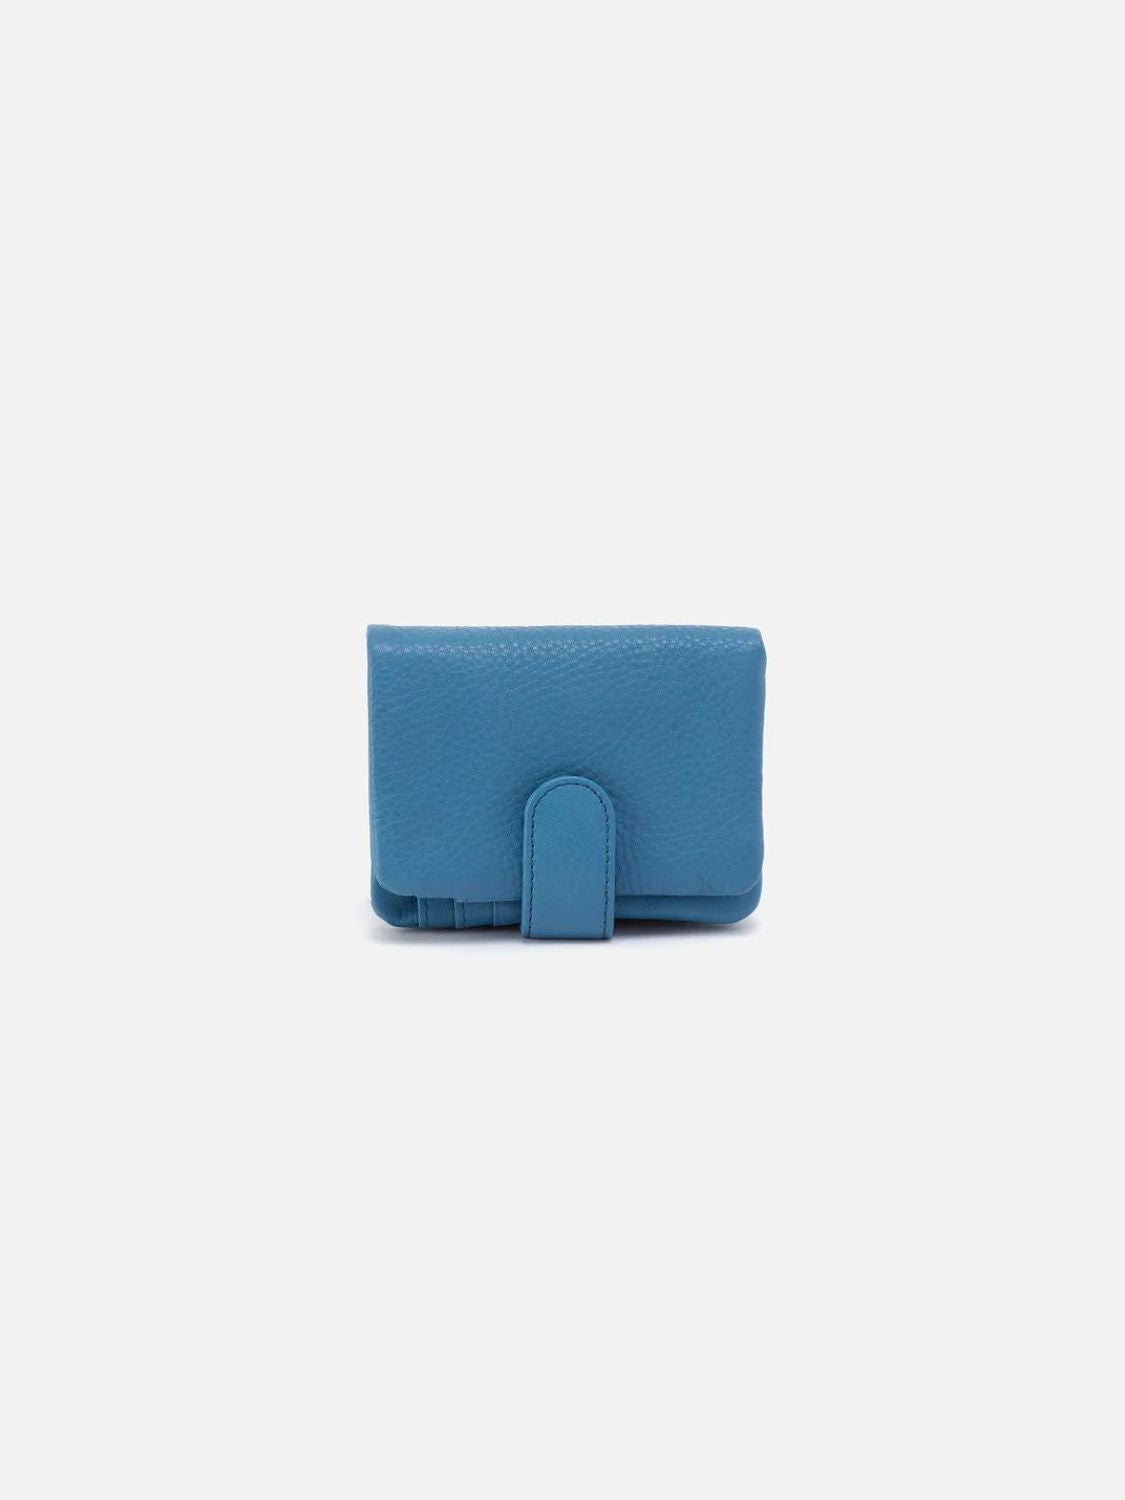 hobo fern pebbled leather bifold wallet in dusty blue-back 